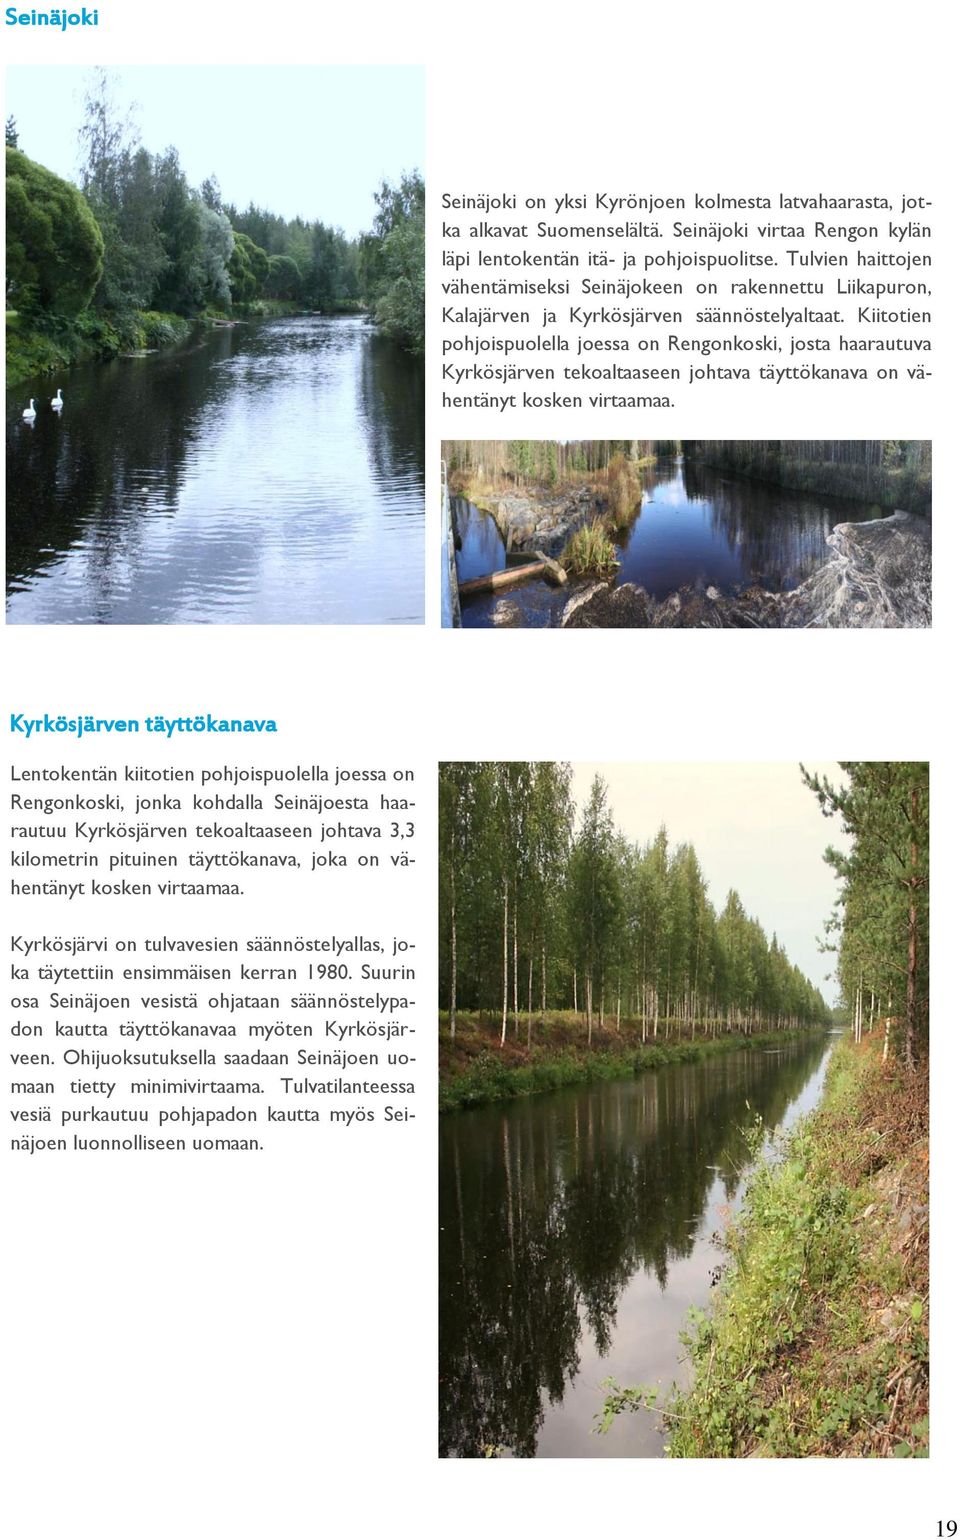 Kiitotien pohjoispuolella joessa on Rengonkoski, josta haarautuva Kyrkösjärven tekoaltaaseen johtava täyttökanava on vähentänyt kosken virtaamaa.